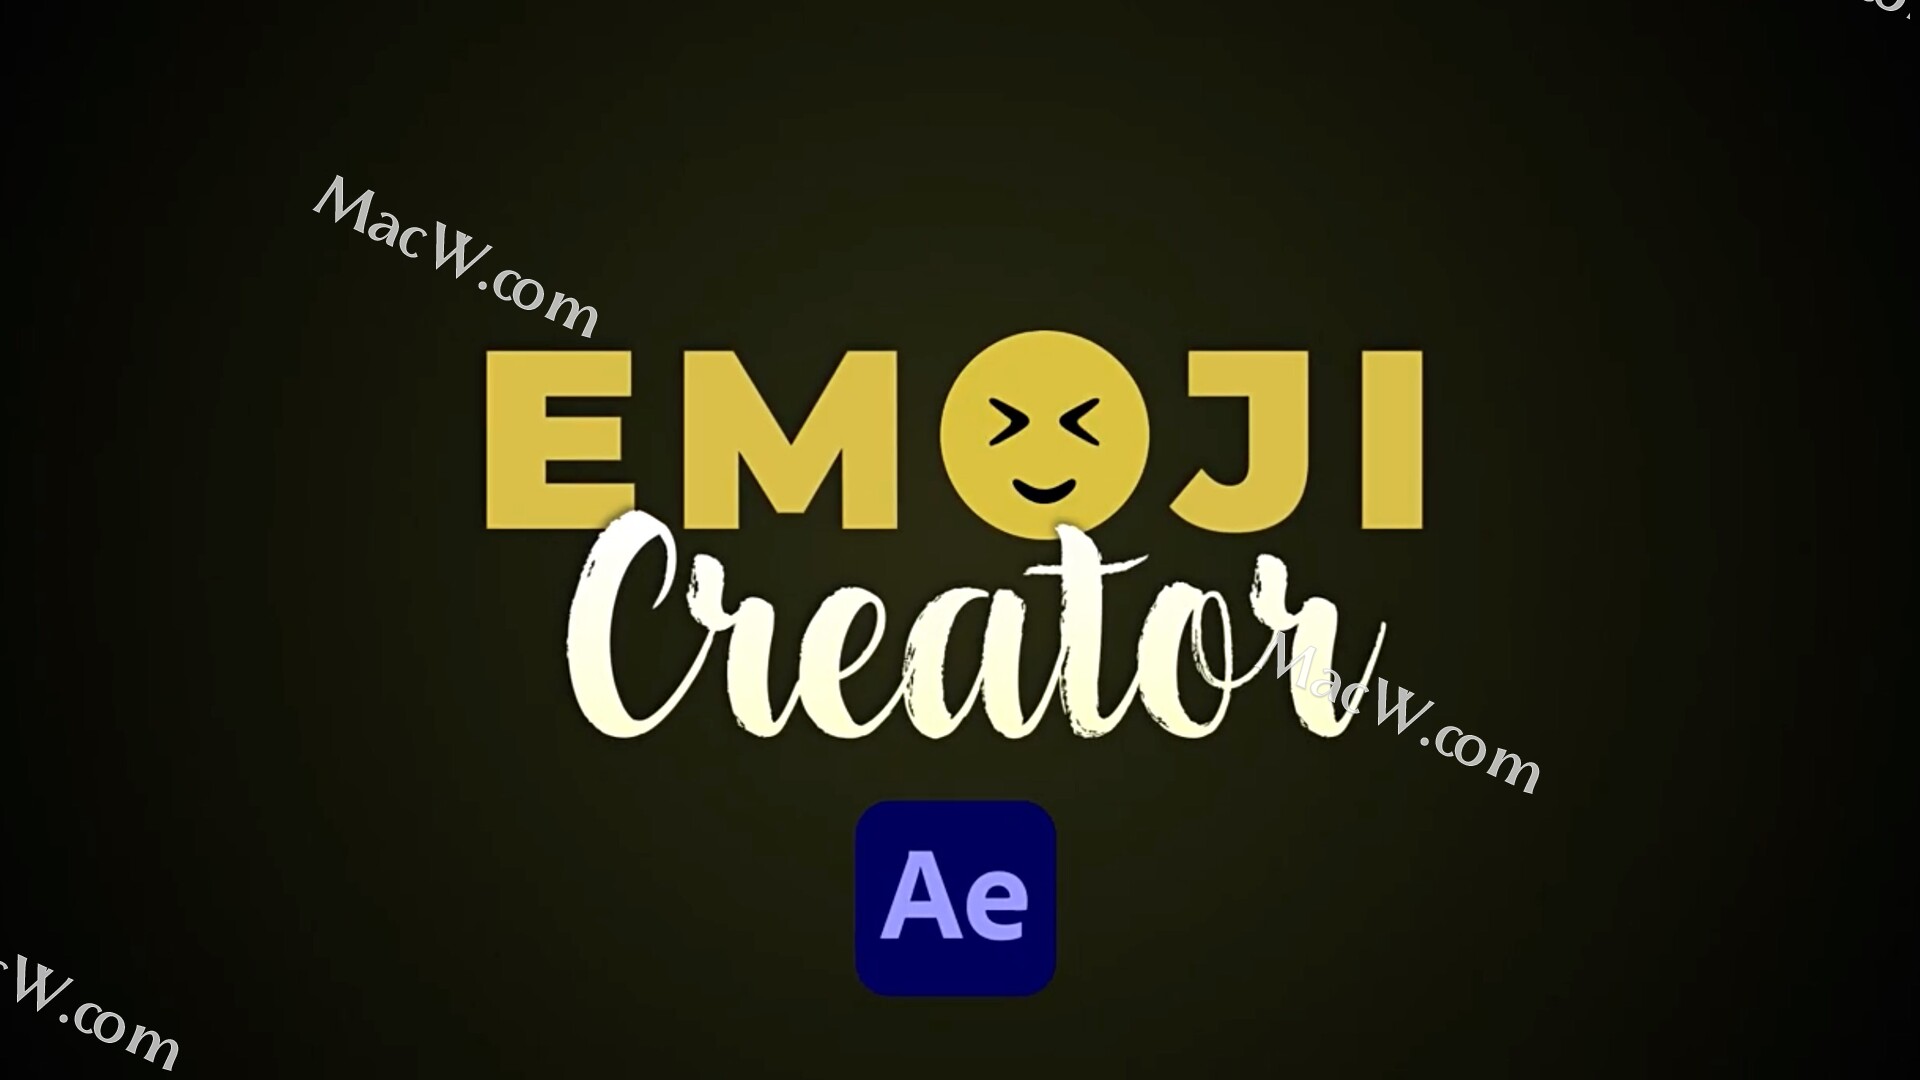 12000社交媒体Emoji卡通表情创作生成工具AE/PR模板12000 Emojis Creator Pack